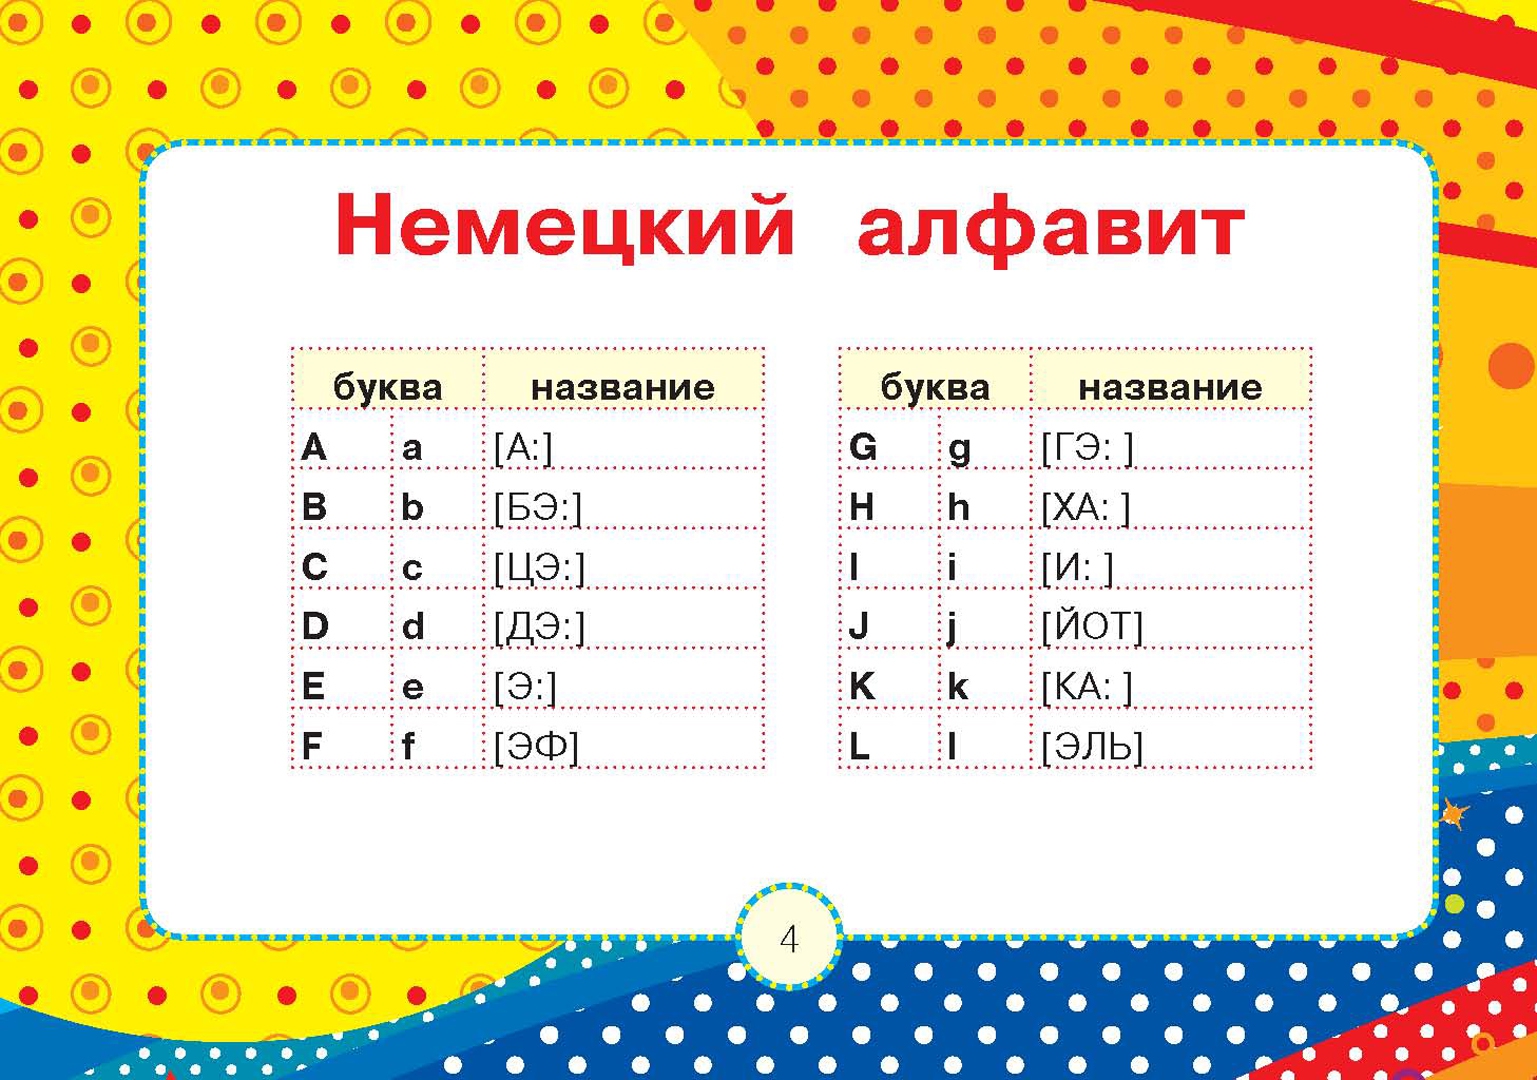 S nulya ru. Английский для малышей с нуля. Изучаем английский с нуля для детей. Учим английский язык с нуля для детей. Английский для начинающих детей с нуля.